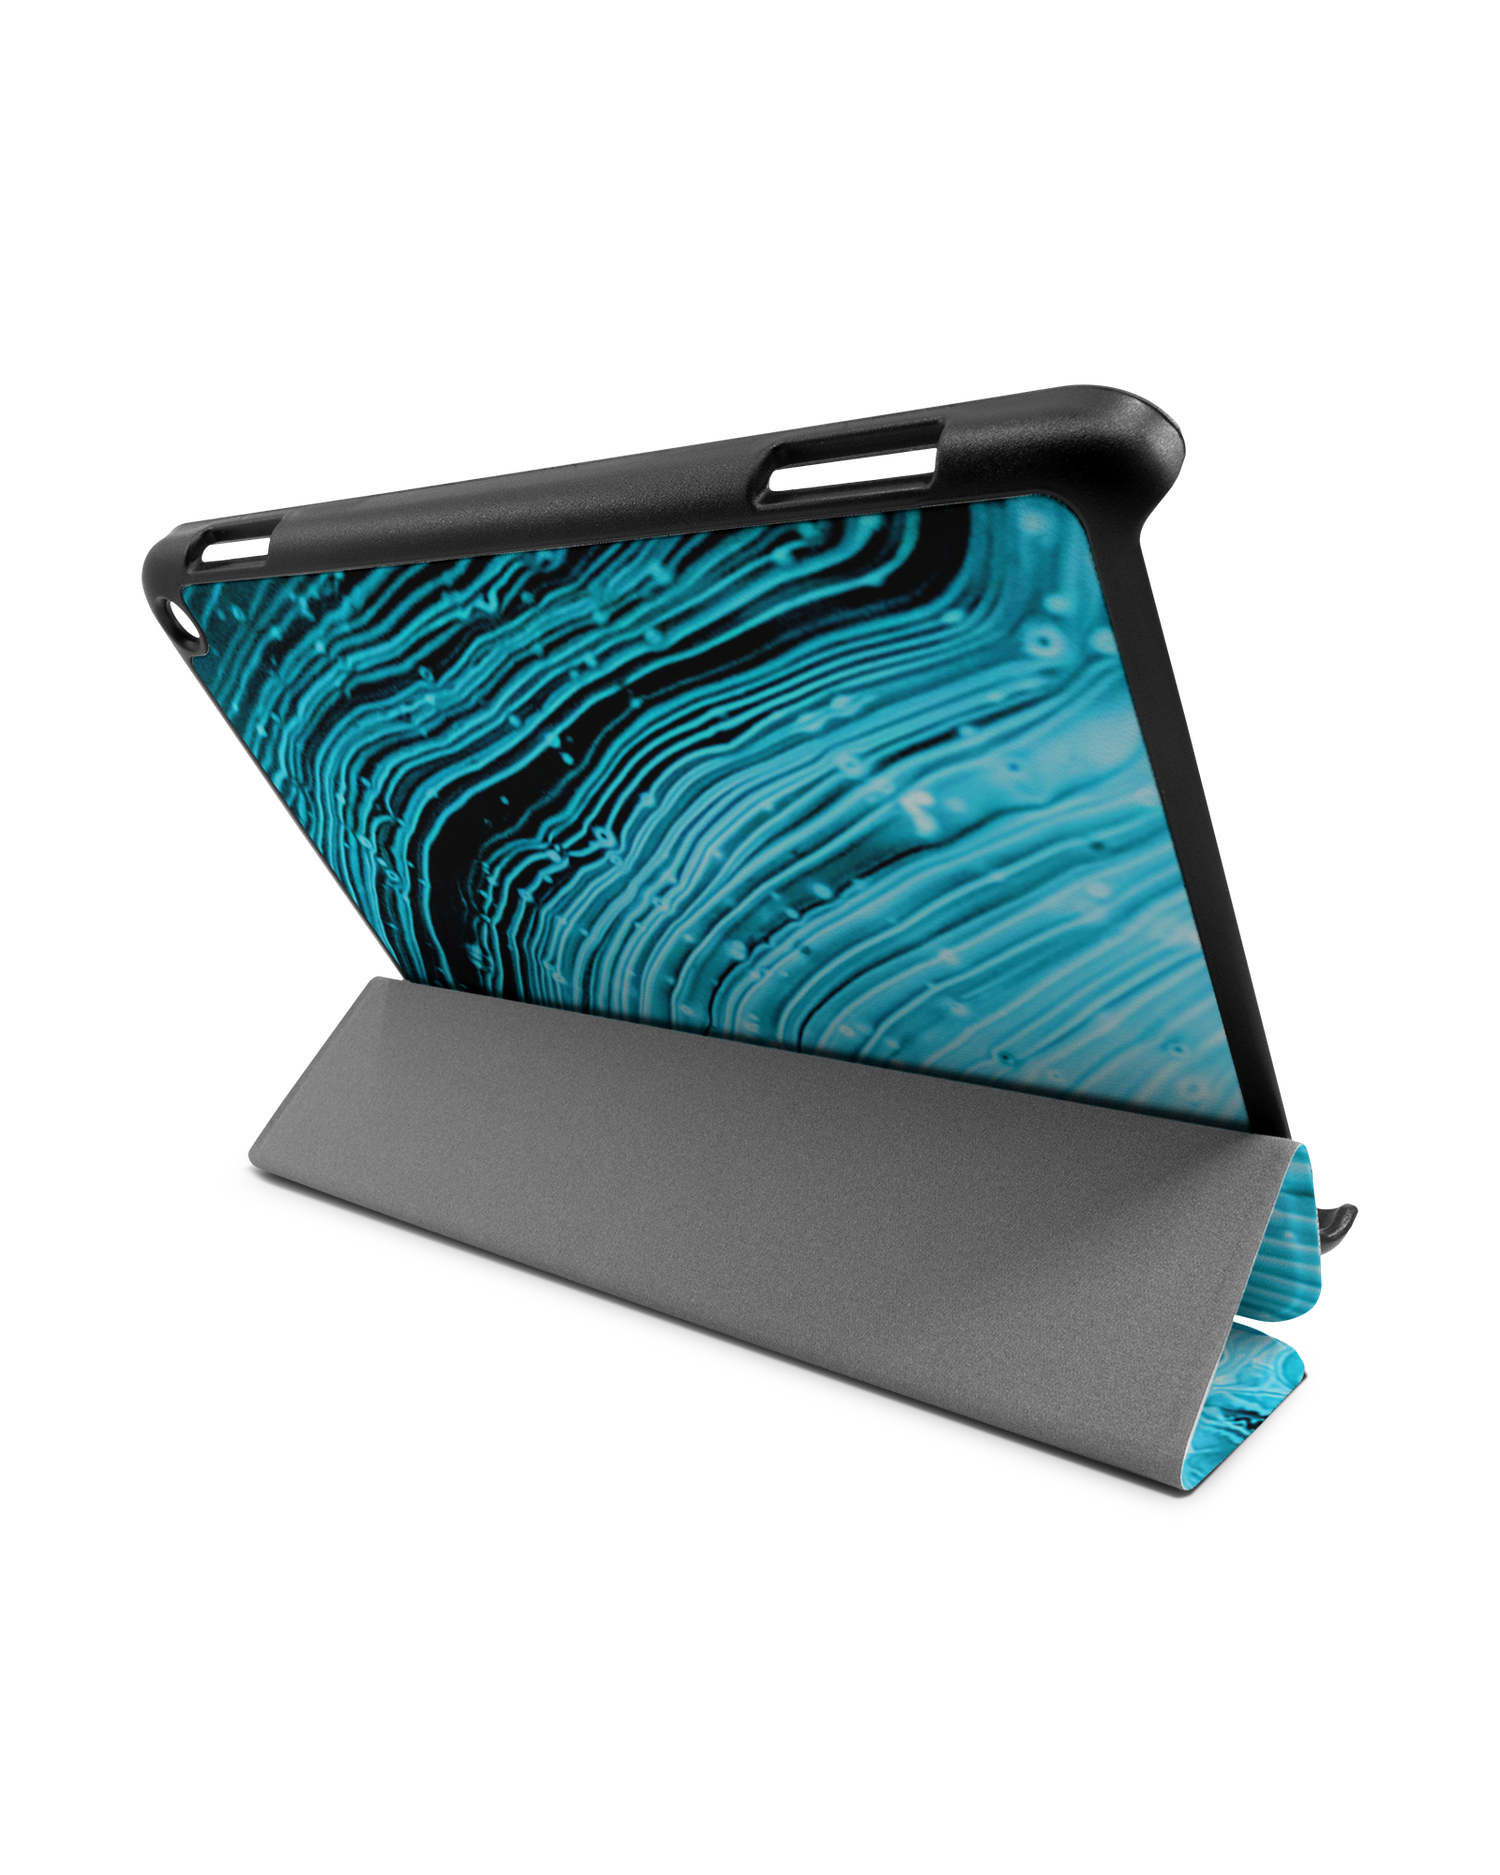 Turquoise Ripples Tablet Smart Case für Amazon Fire HD 8 (2022), Amazon Fire HD 8 Plus (2022), Amazon Fire HD 8 (2020), Amazon Fire HD 8 Plus (2020): Aufgestellt im Querformat